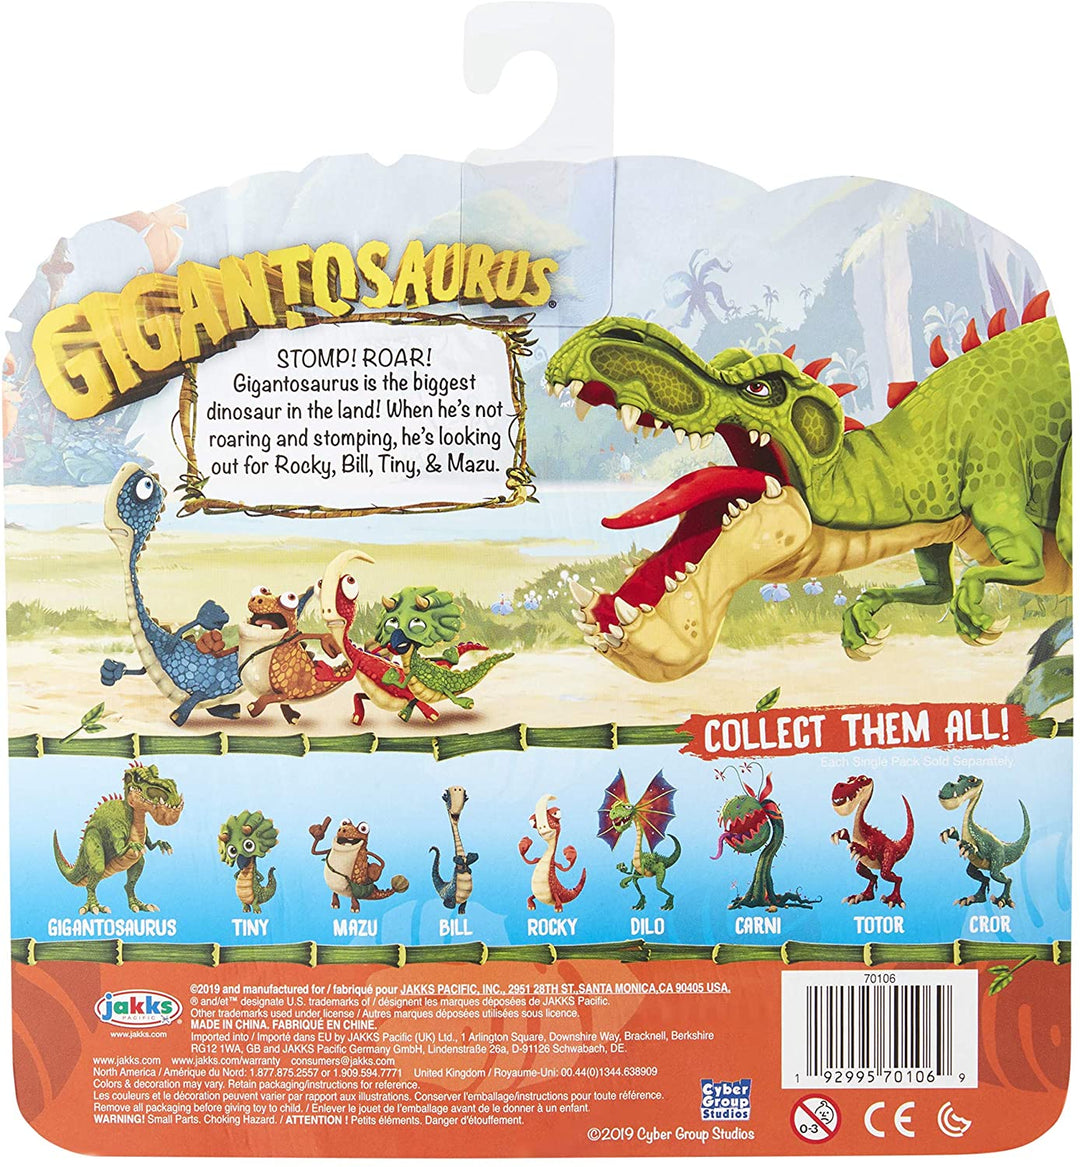 Gigantosaurus Giganto Dinosaurier-Charakterfigur mit beweglichen Gliedmaßen. 4,5 Zoll